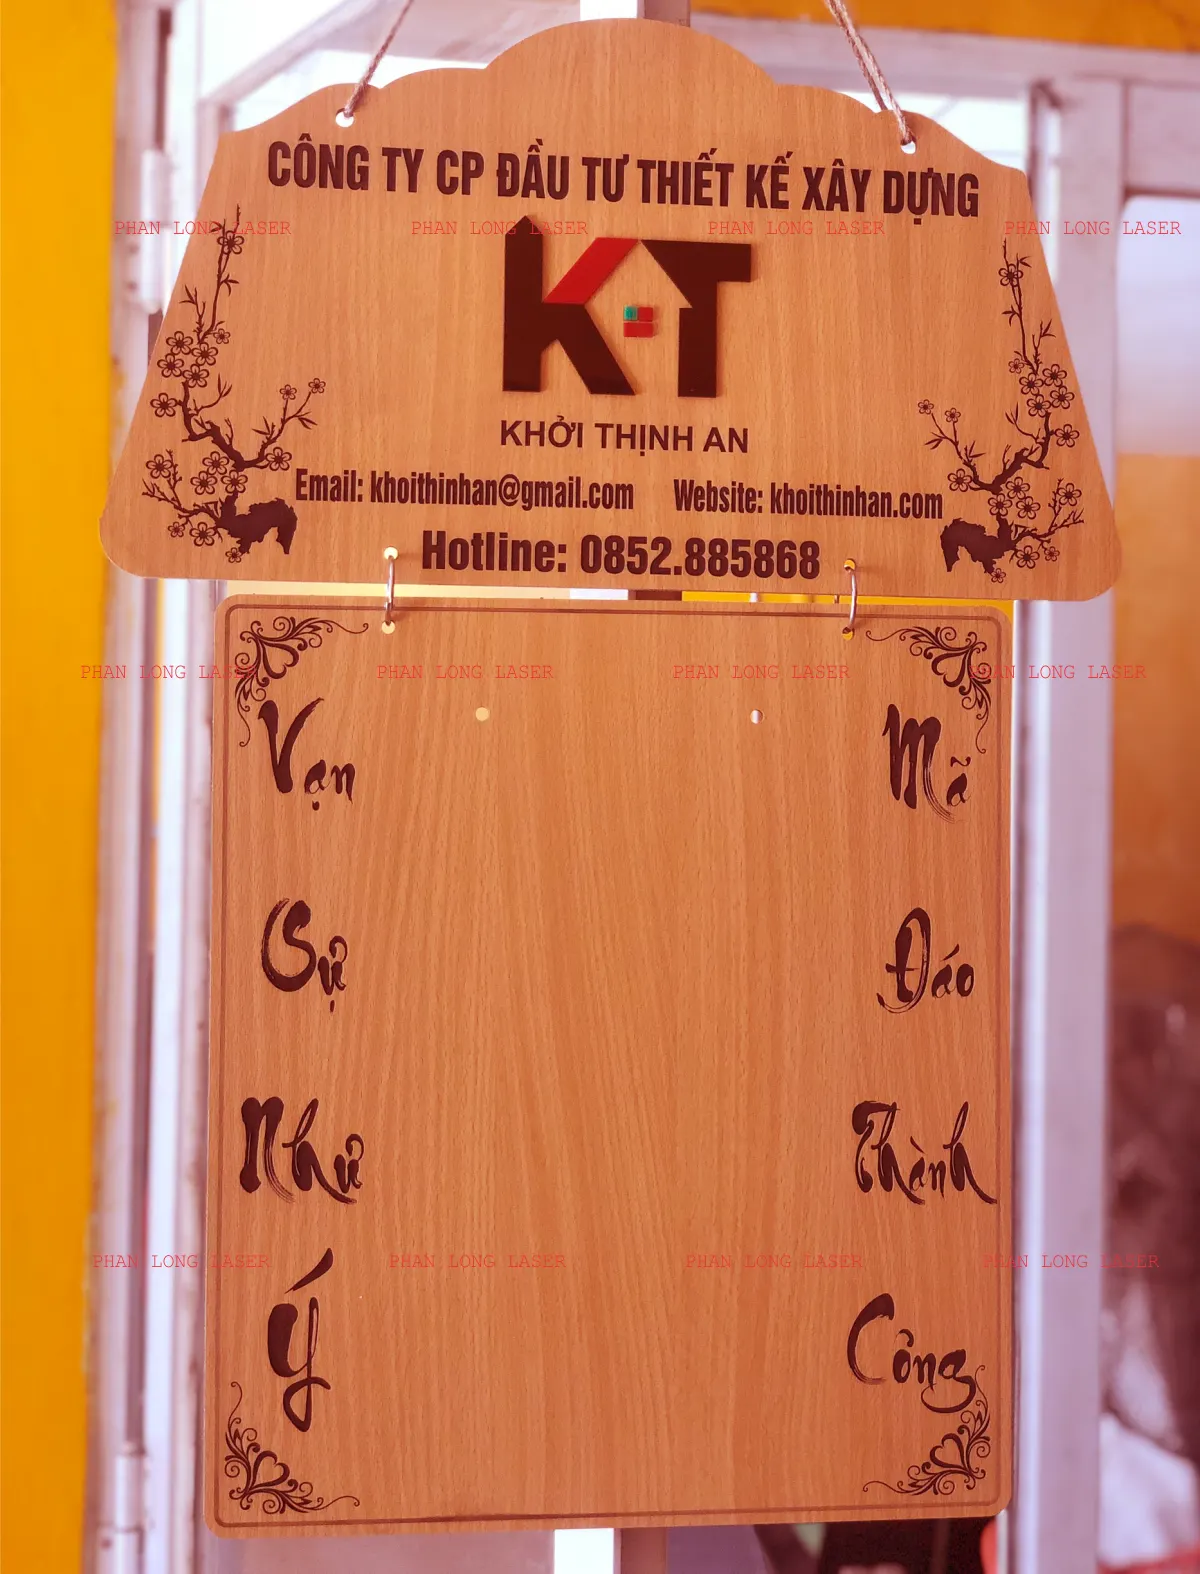 Nhận làm lịch bìa gỗ, làm lịch gỗ để bàn, lịch gỗ treo tường theo yêu cầu giá rẻ tại Sài Gòn, Hà Nội, Hải Phòng, Đà Nẵng, Cần Thơ